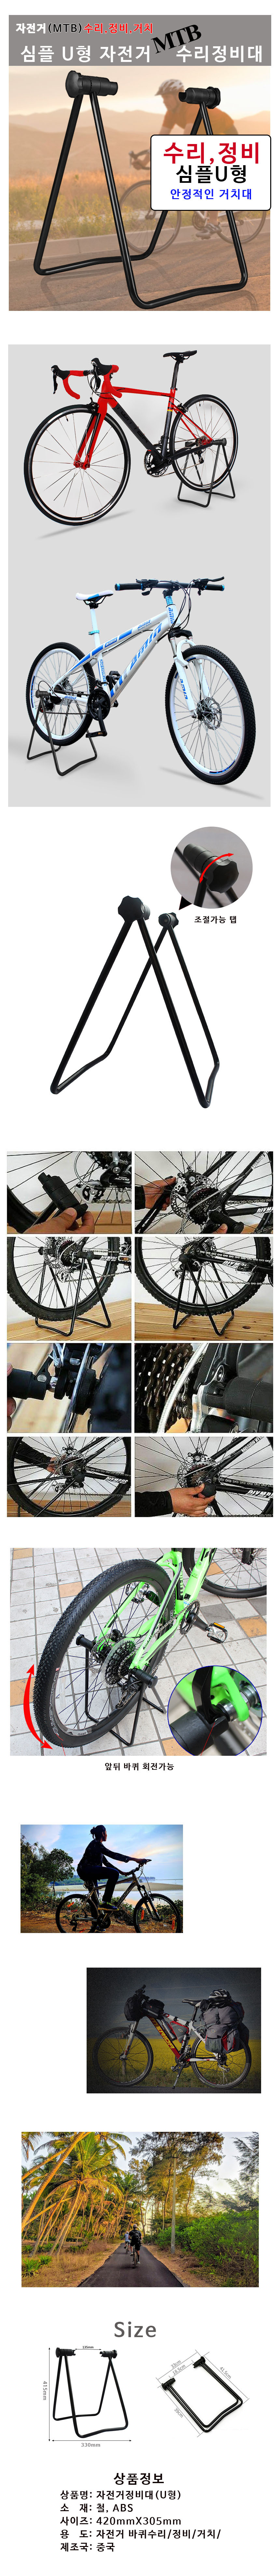 bike_repair_stand.jpg